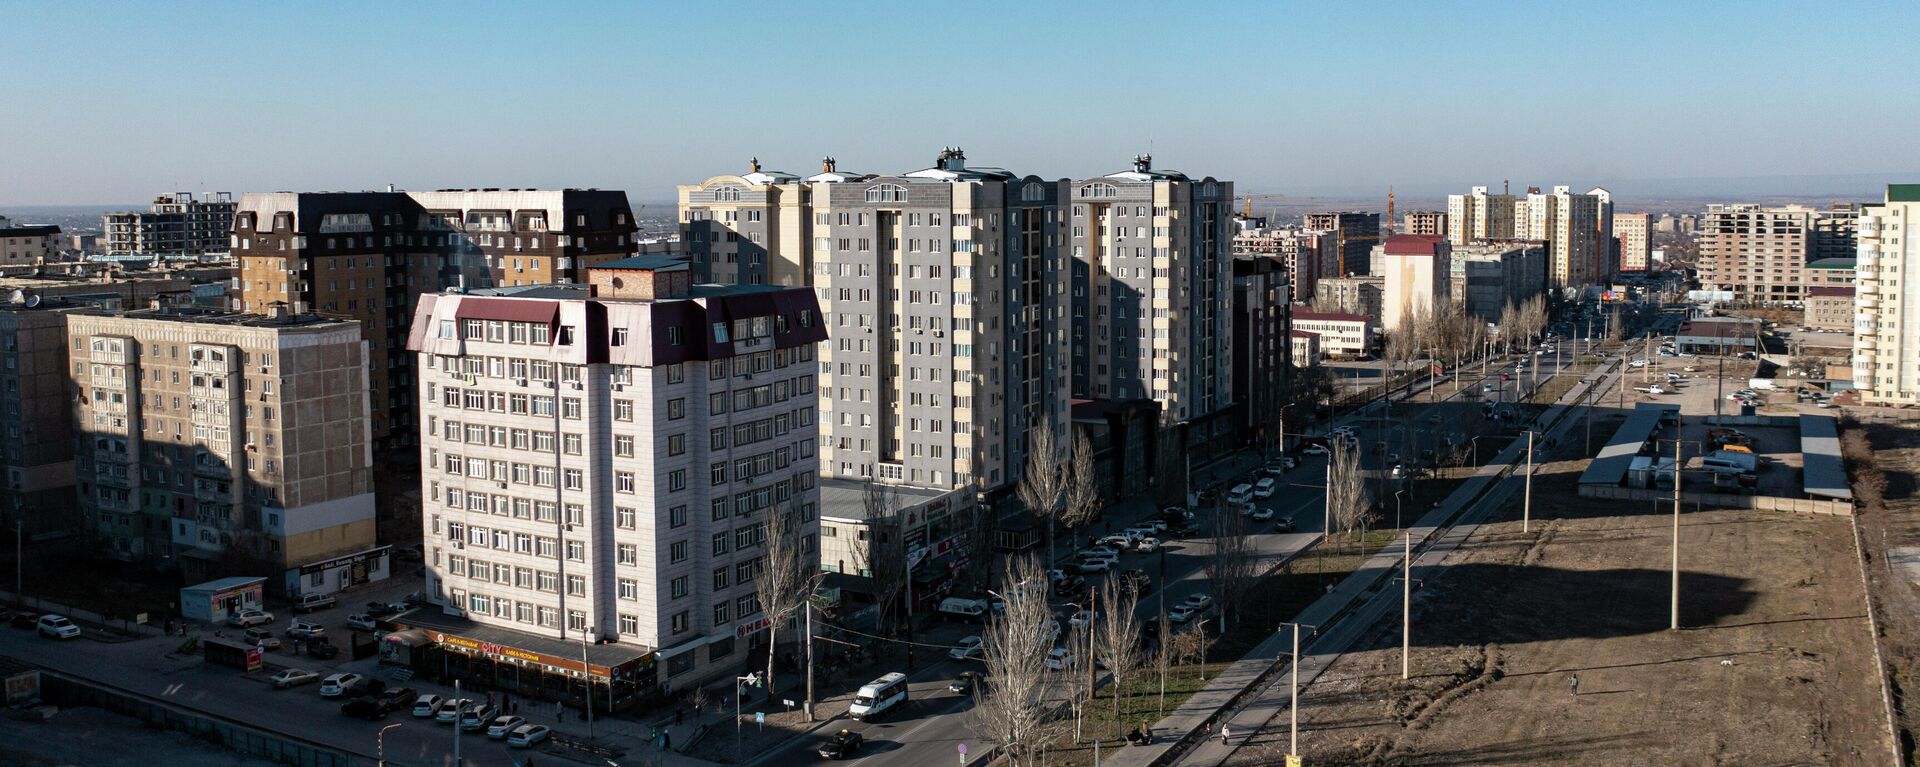 Вид на многоэтажные жилые дома в микрорайоне Бишкека. Архивное фото - Sputnik Кыргызстан, 1920, 01.03.2022